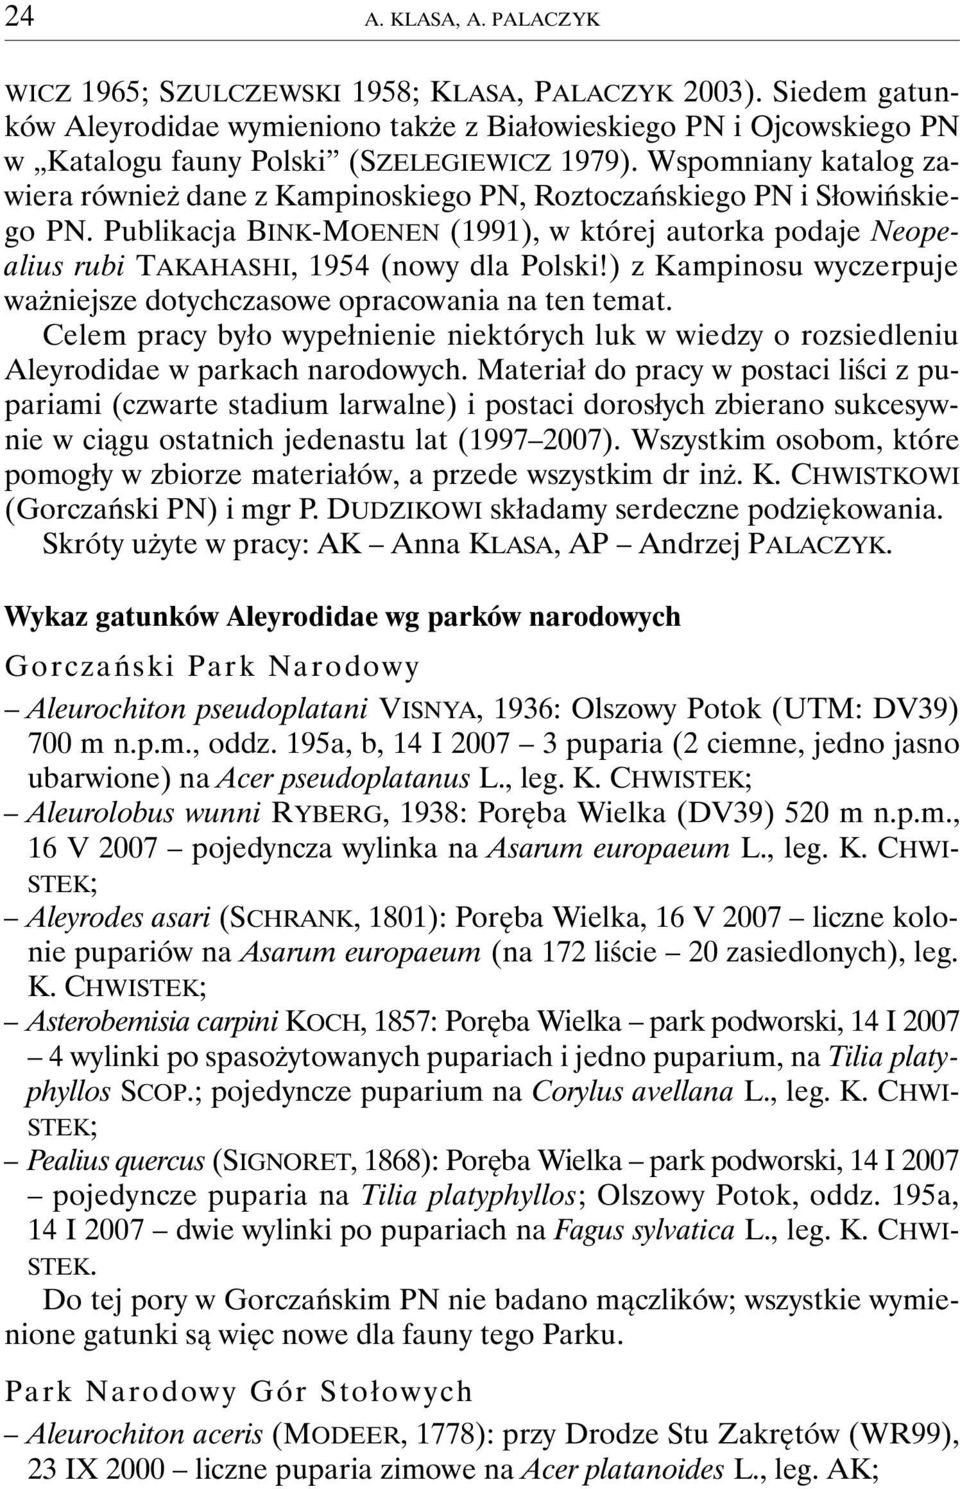 Wspomniany katalog zawiera również dane z Kampinoskiego PN, Roztoczańskiego PN i Słowińskiego PN.